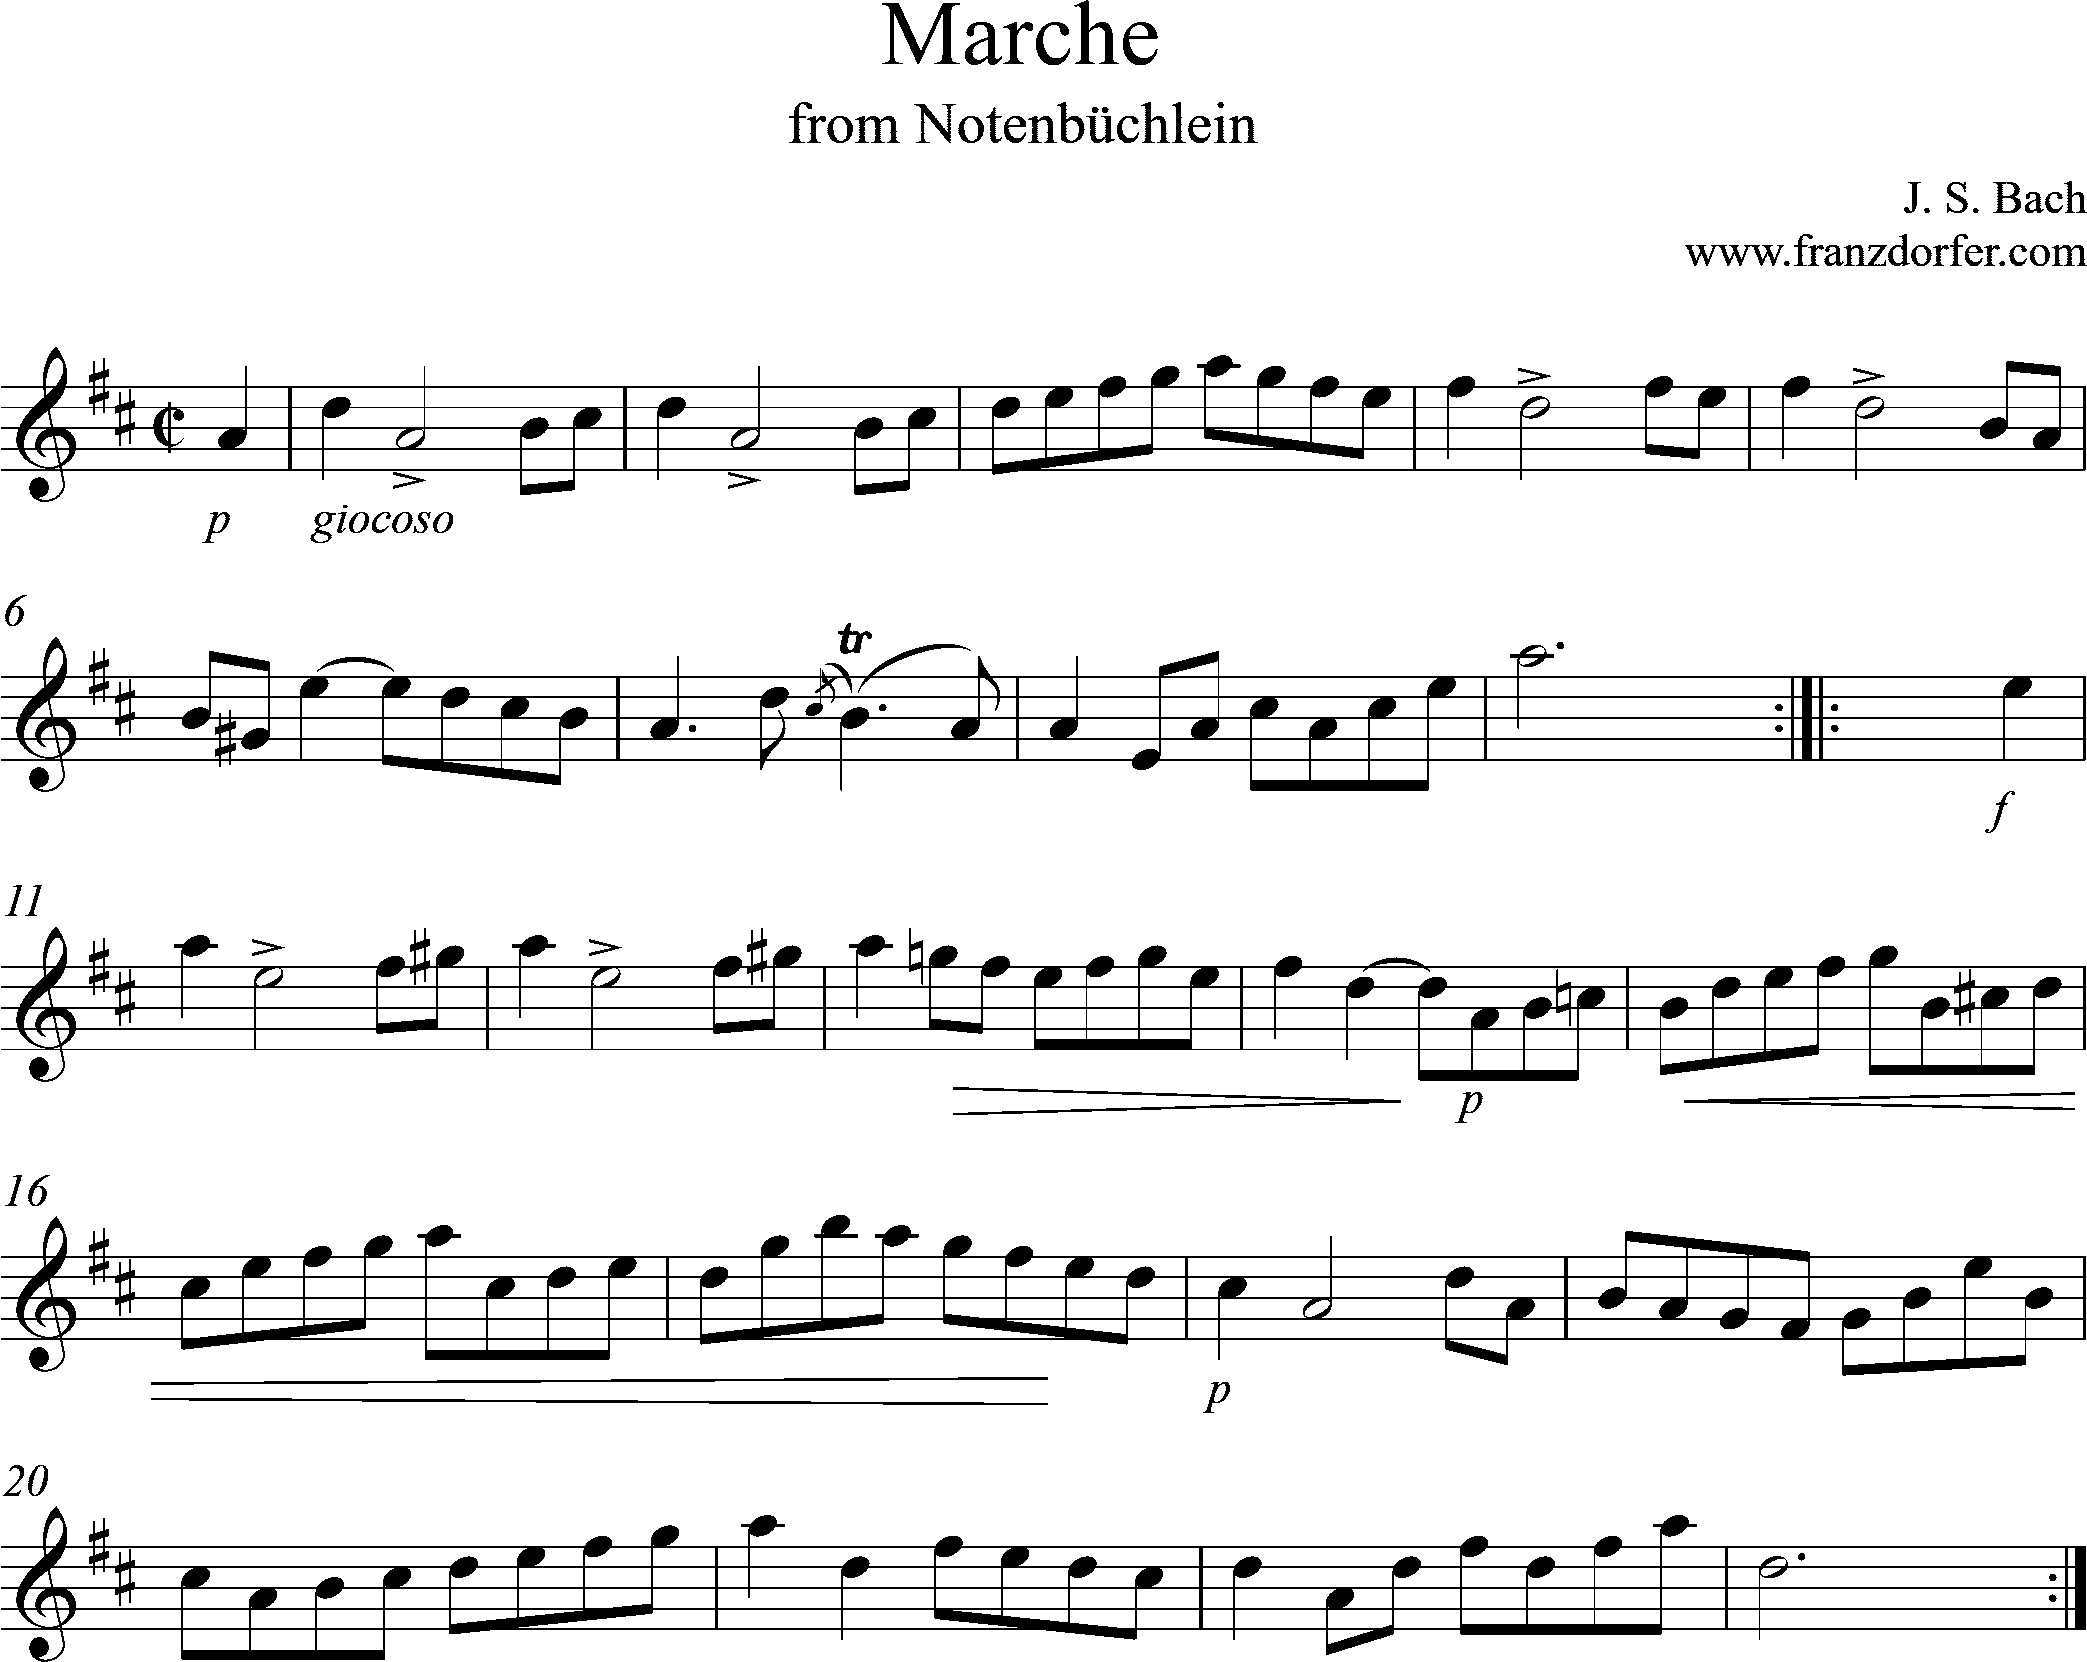 Marche in D, Notenbüchlein Bach